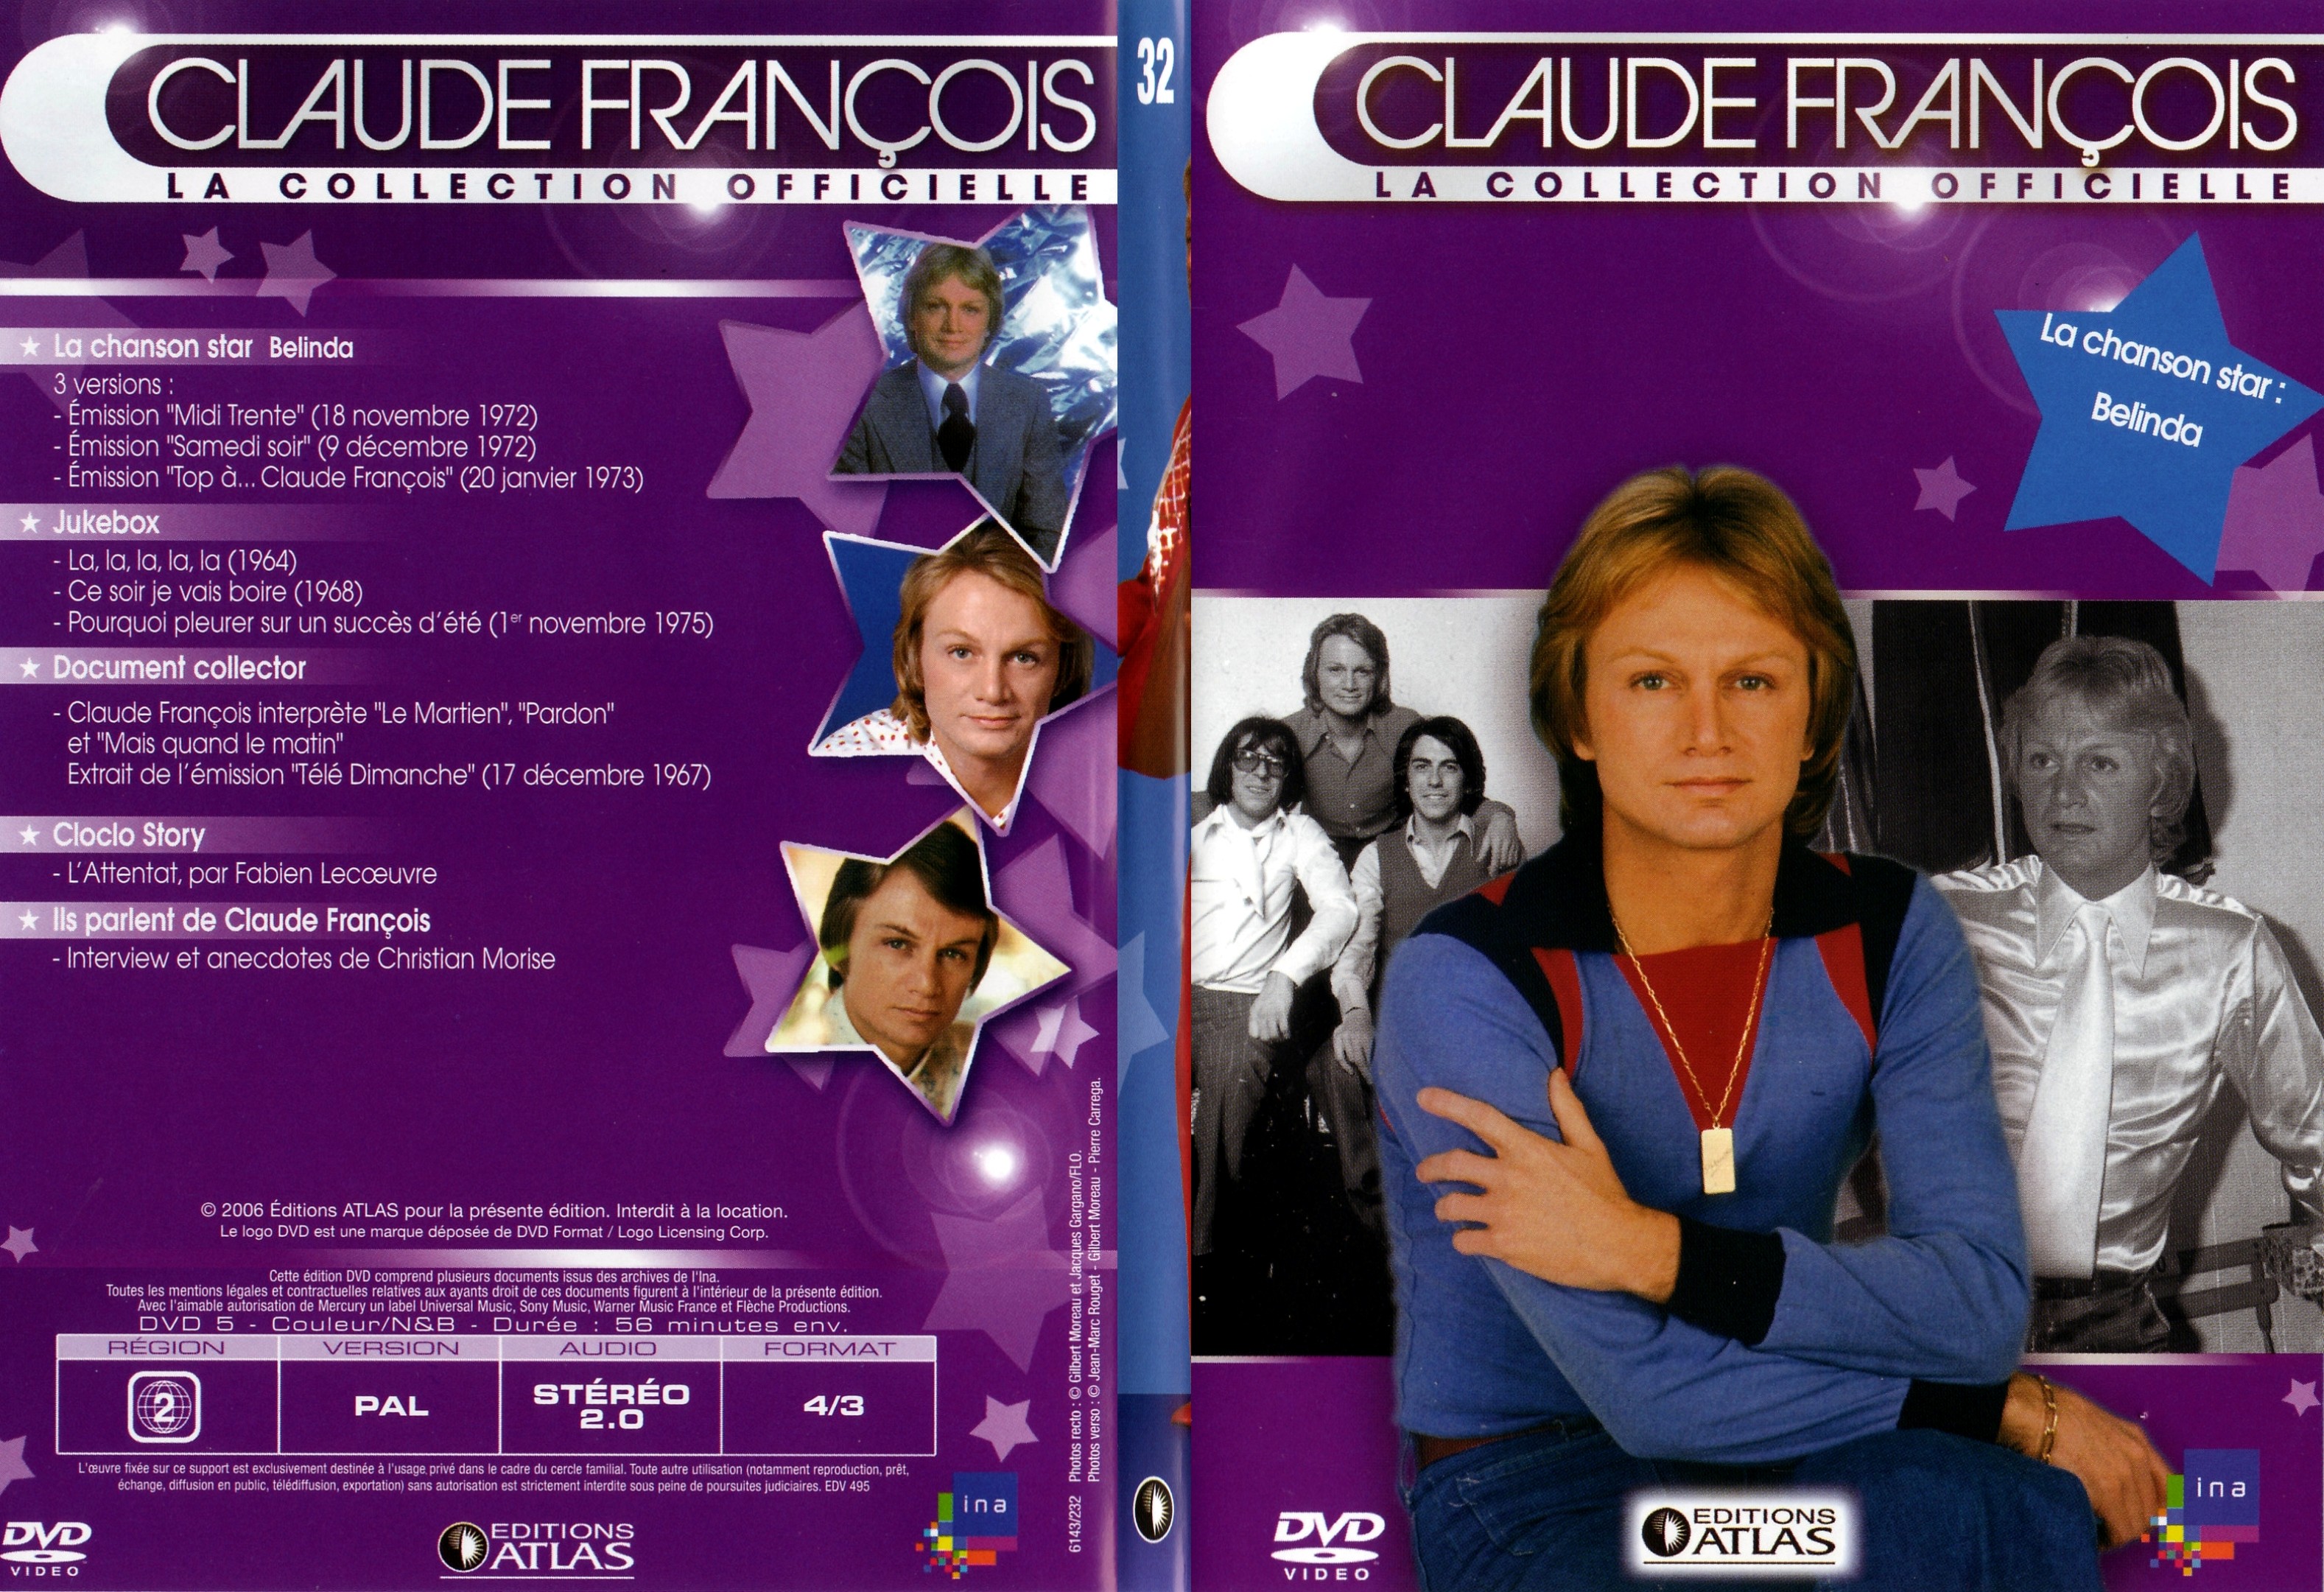 Jaquette DVD Claude francois le collection officielle vol 32 - SLIM